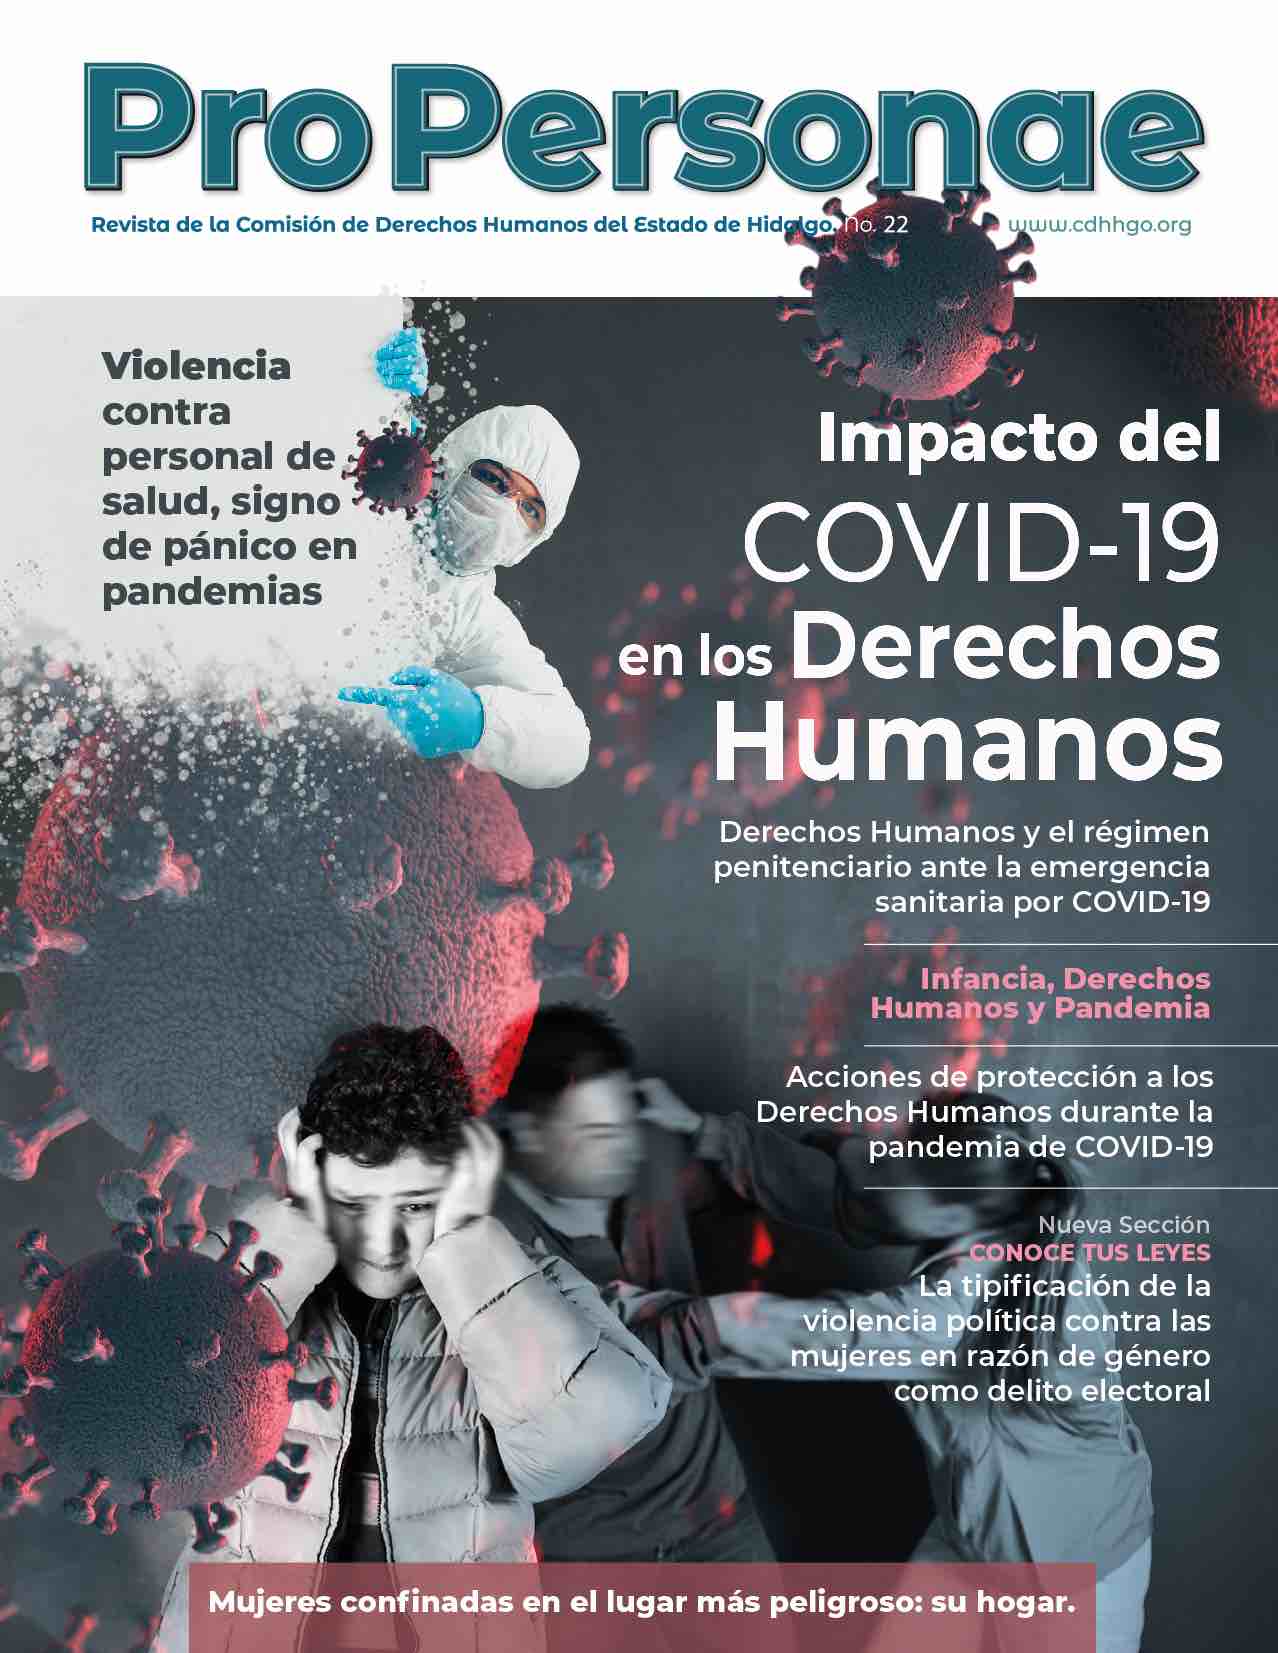 pro personae cover - impacto del covid-19 en los derechos humanos